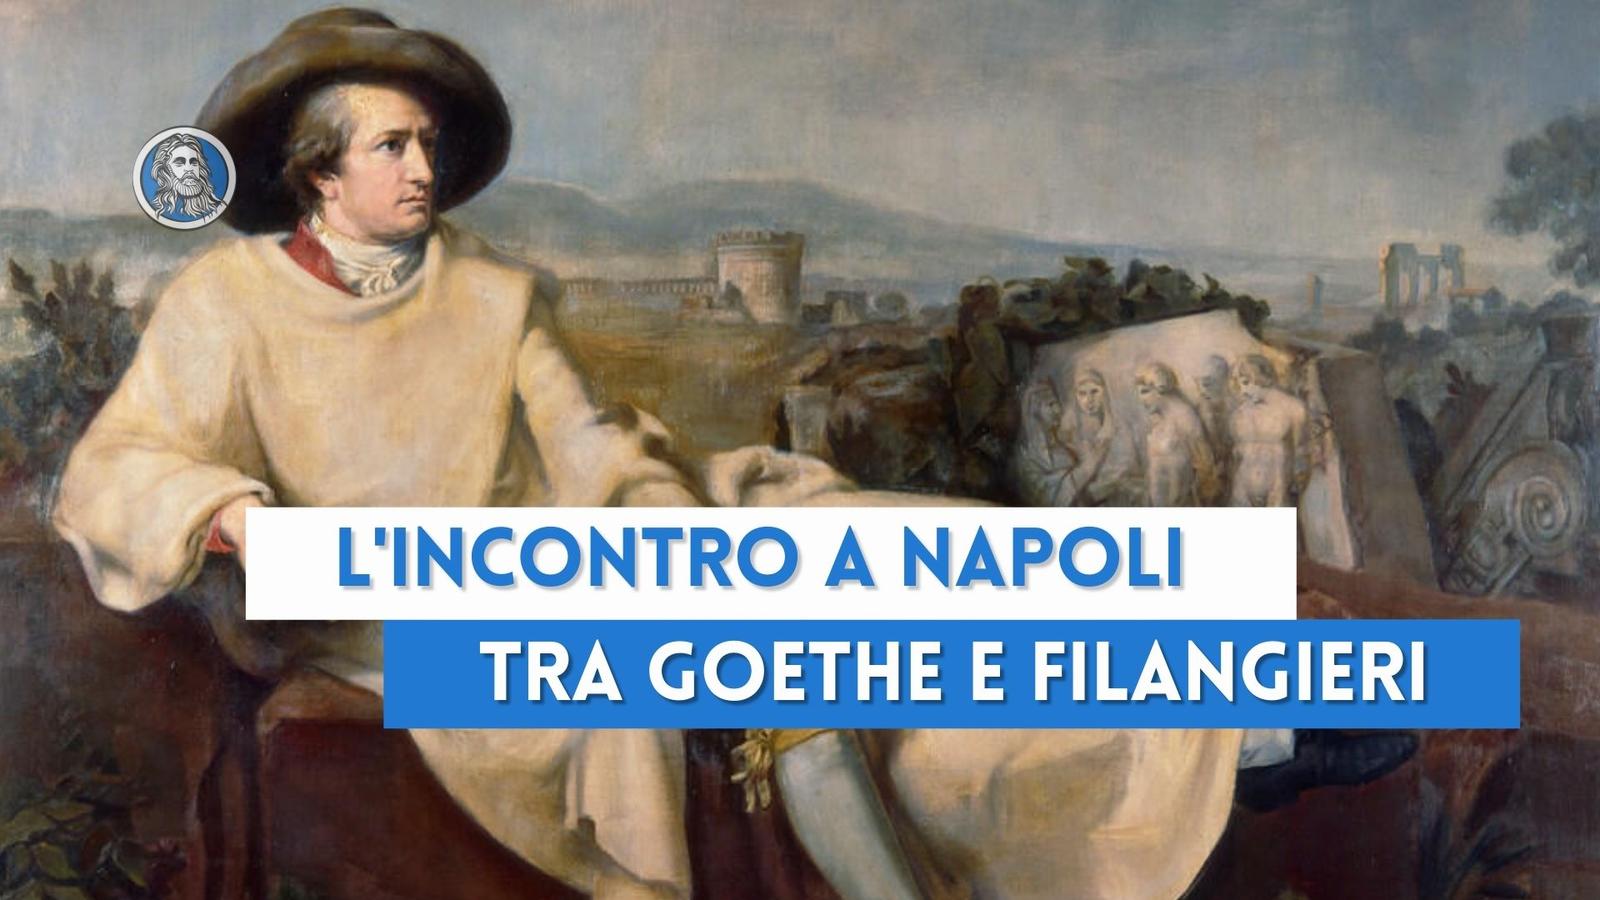 L'incontro tra Goethe e Filangieri: due grandi pensatori nella Napoli dei lumi